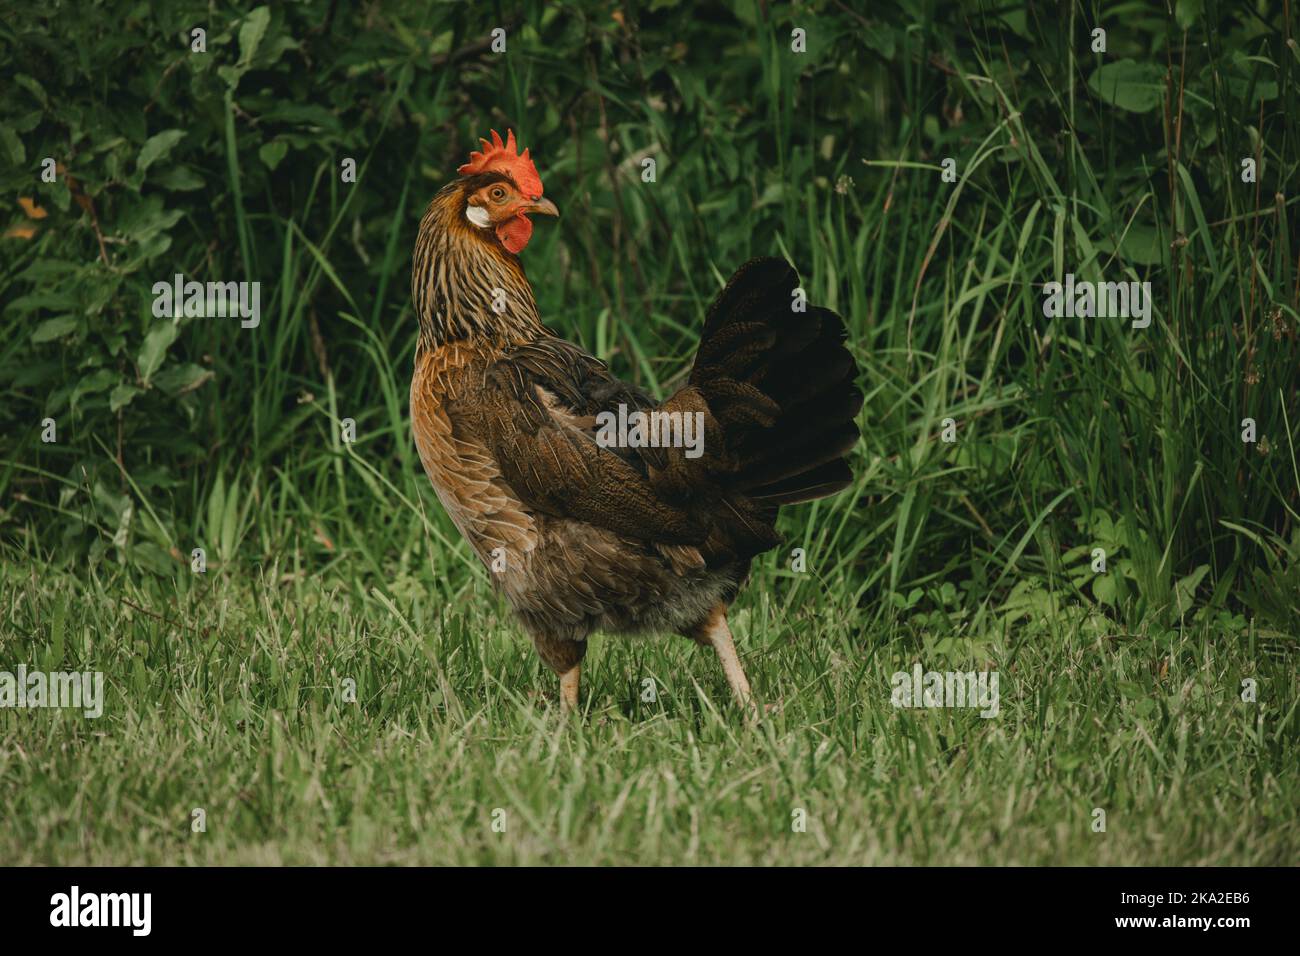 A closeup of a brown Leghorn chicken on a green grass Stock Photo